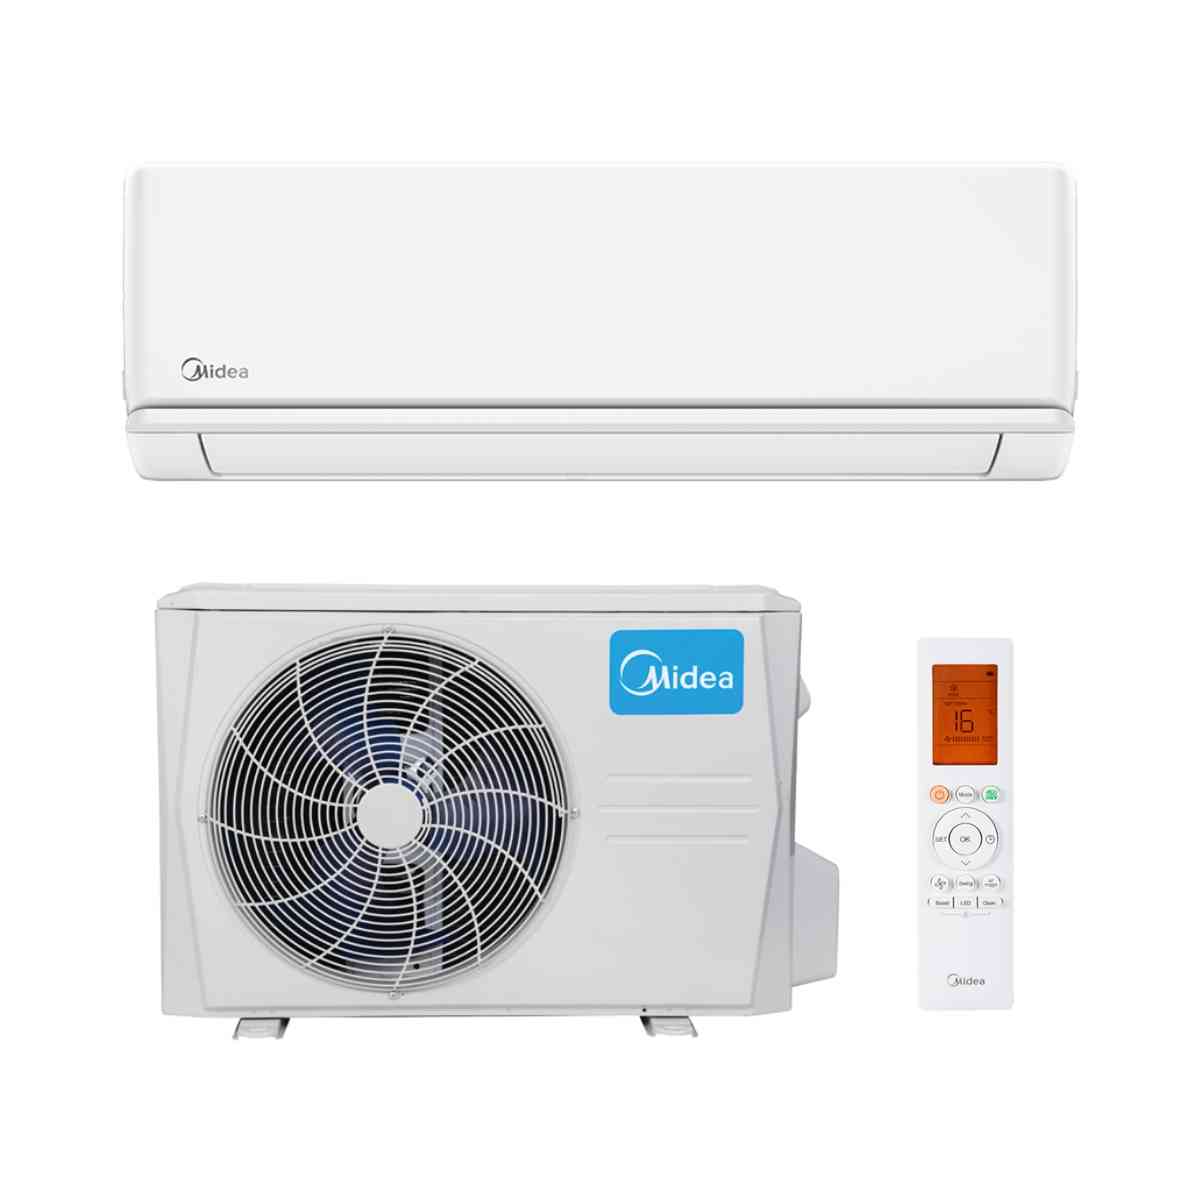 Aire acondicionado split Midea Blanc 2.0 6.020 frigorías con referencia 13950175 de la marca MIDEA